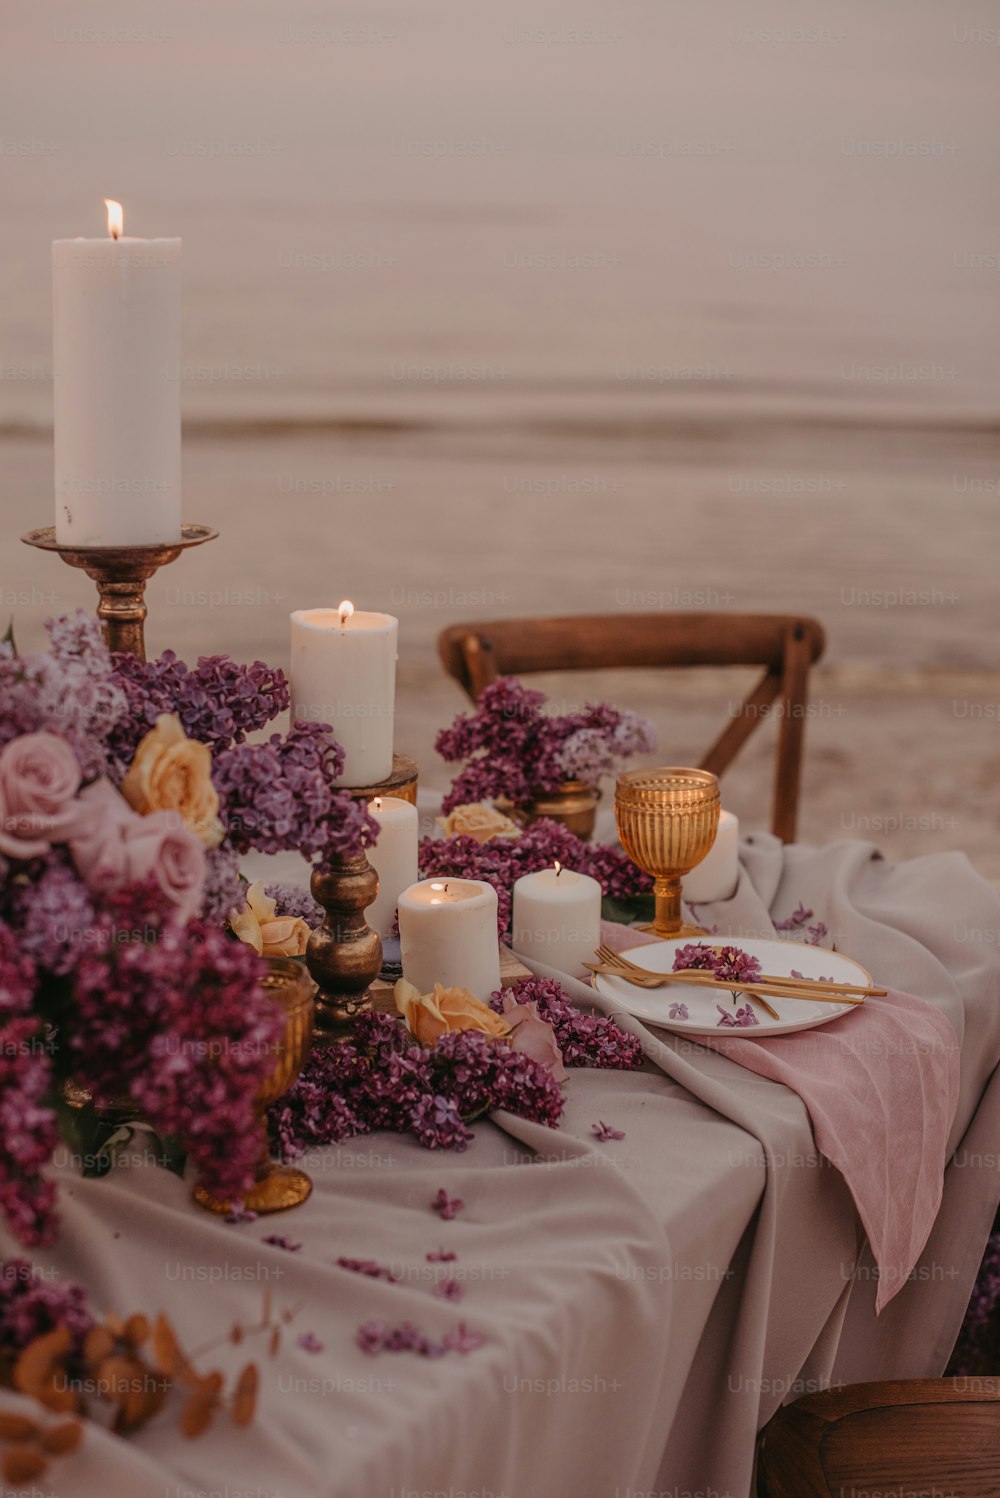 꽃과 촛불이 달린 테이블